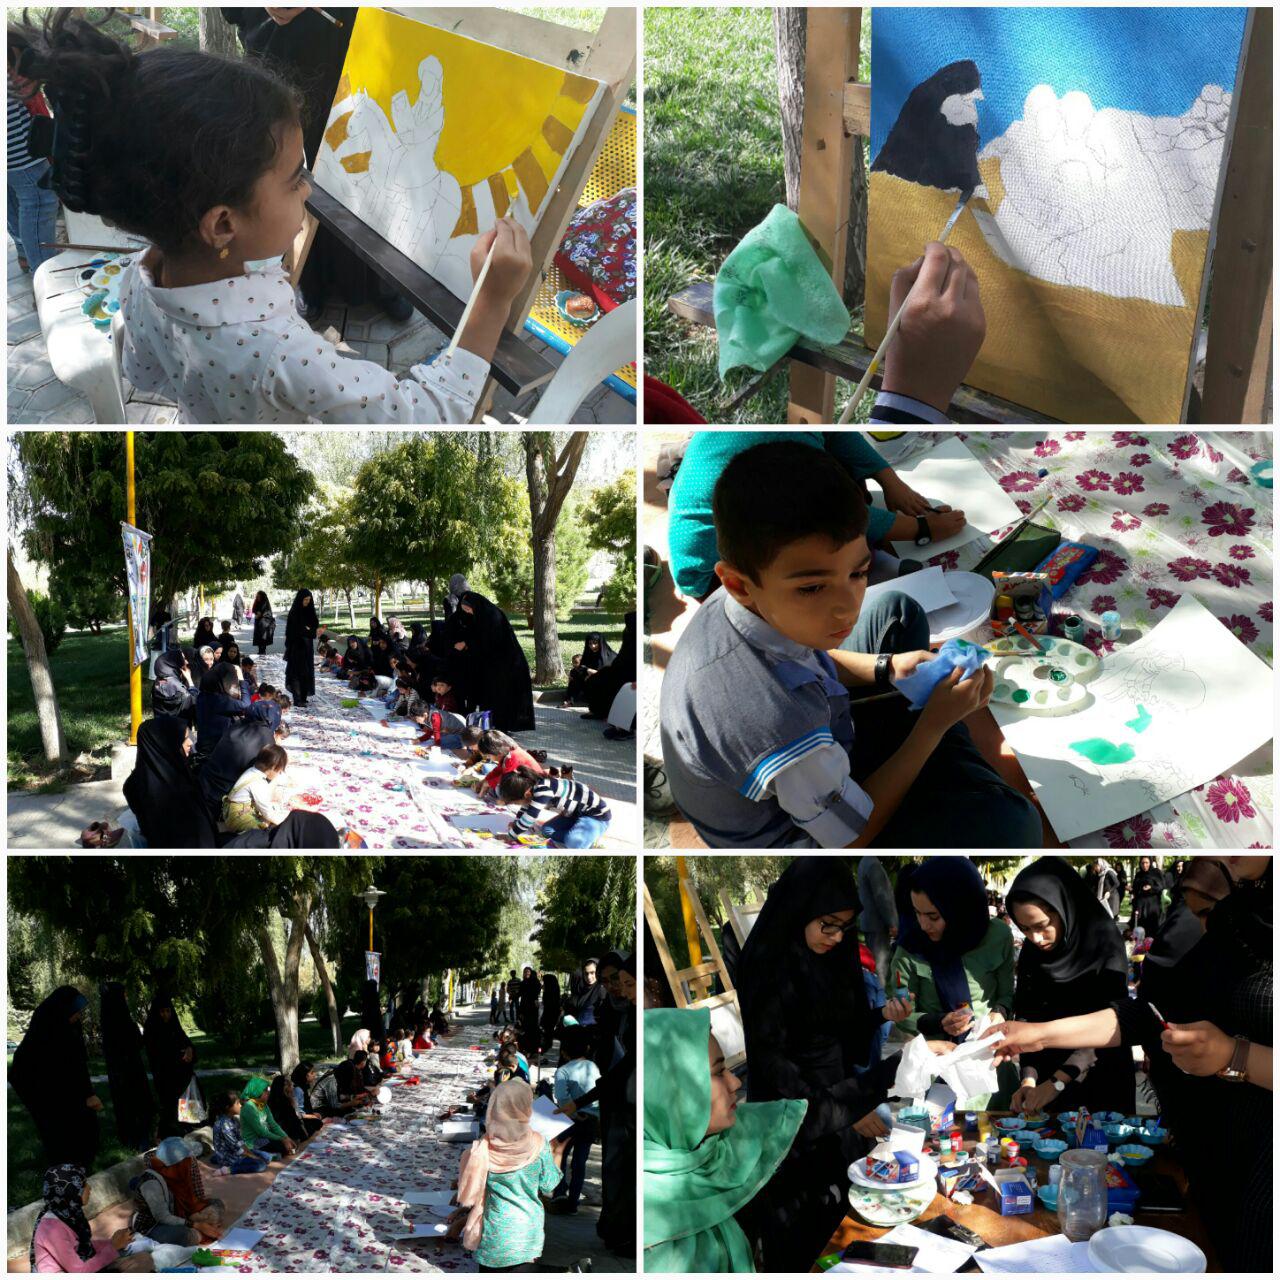 کارگاه آموزشی نقاشی کودکان در شهرستان فلاورجان برگزار شد